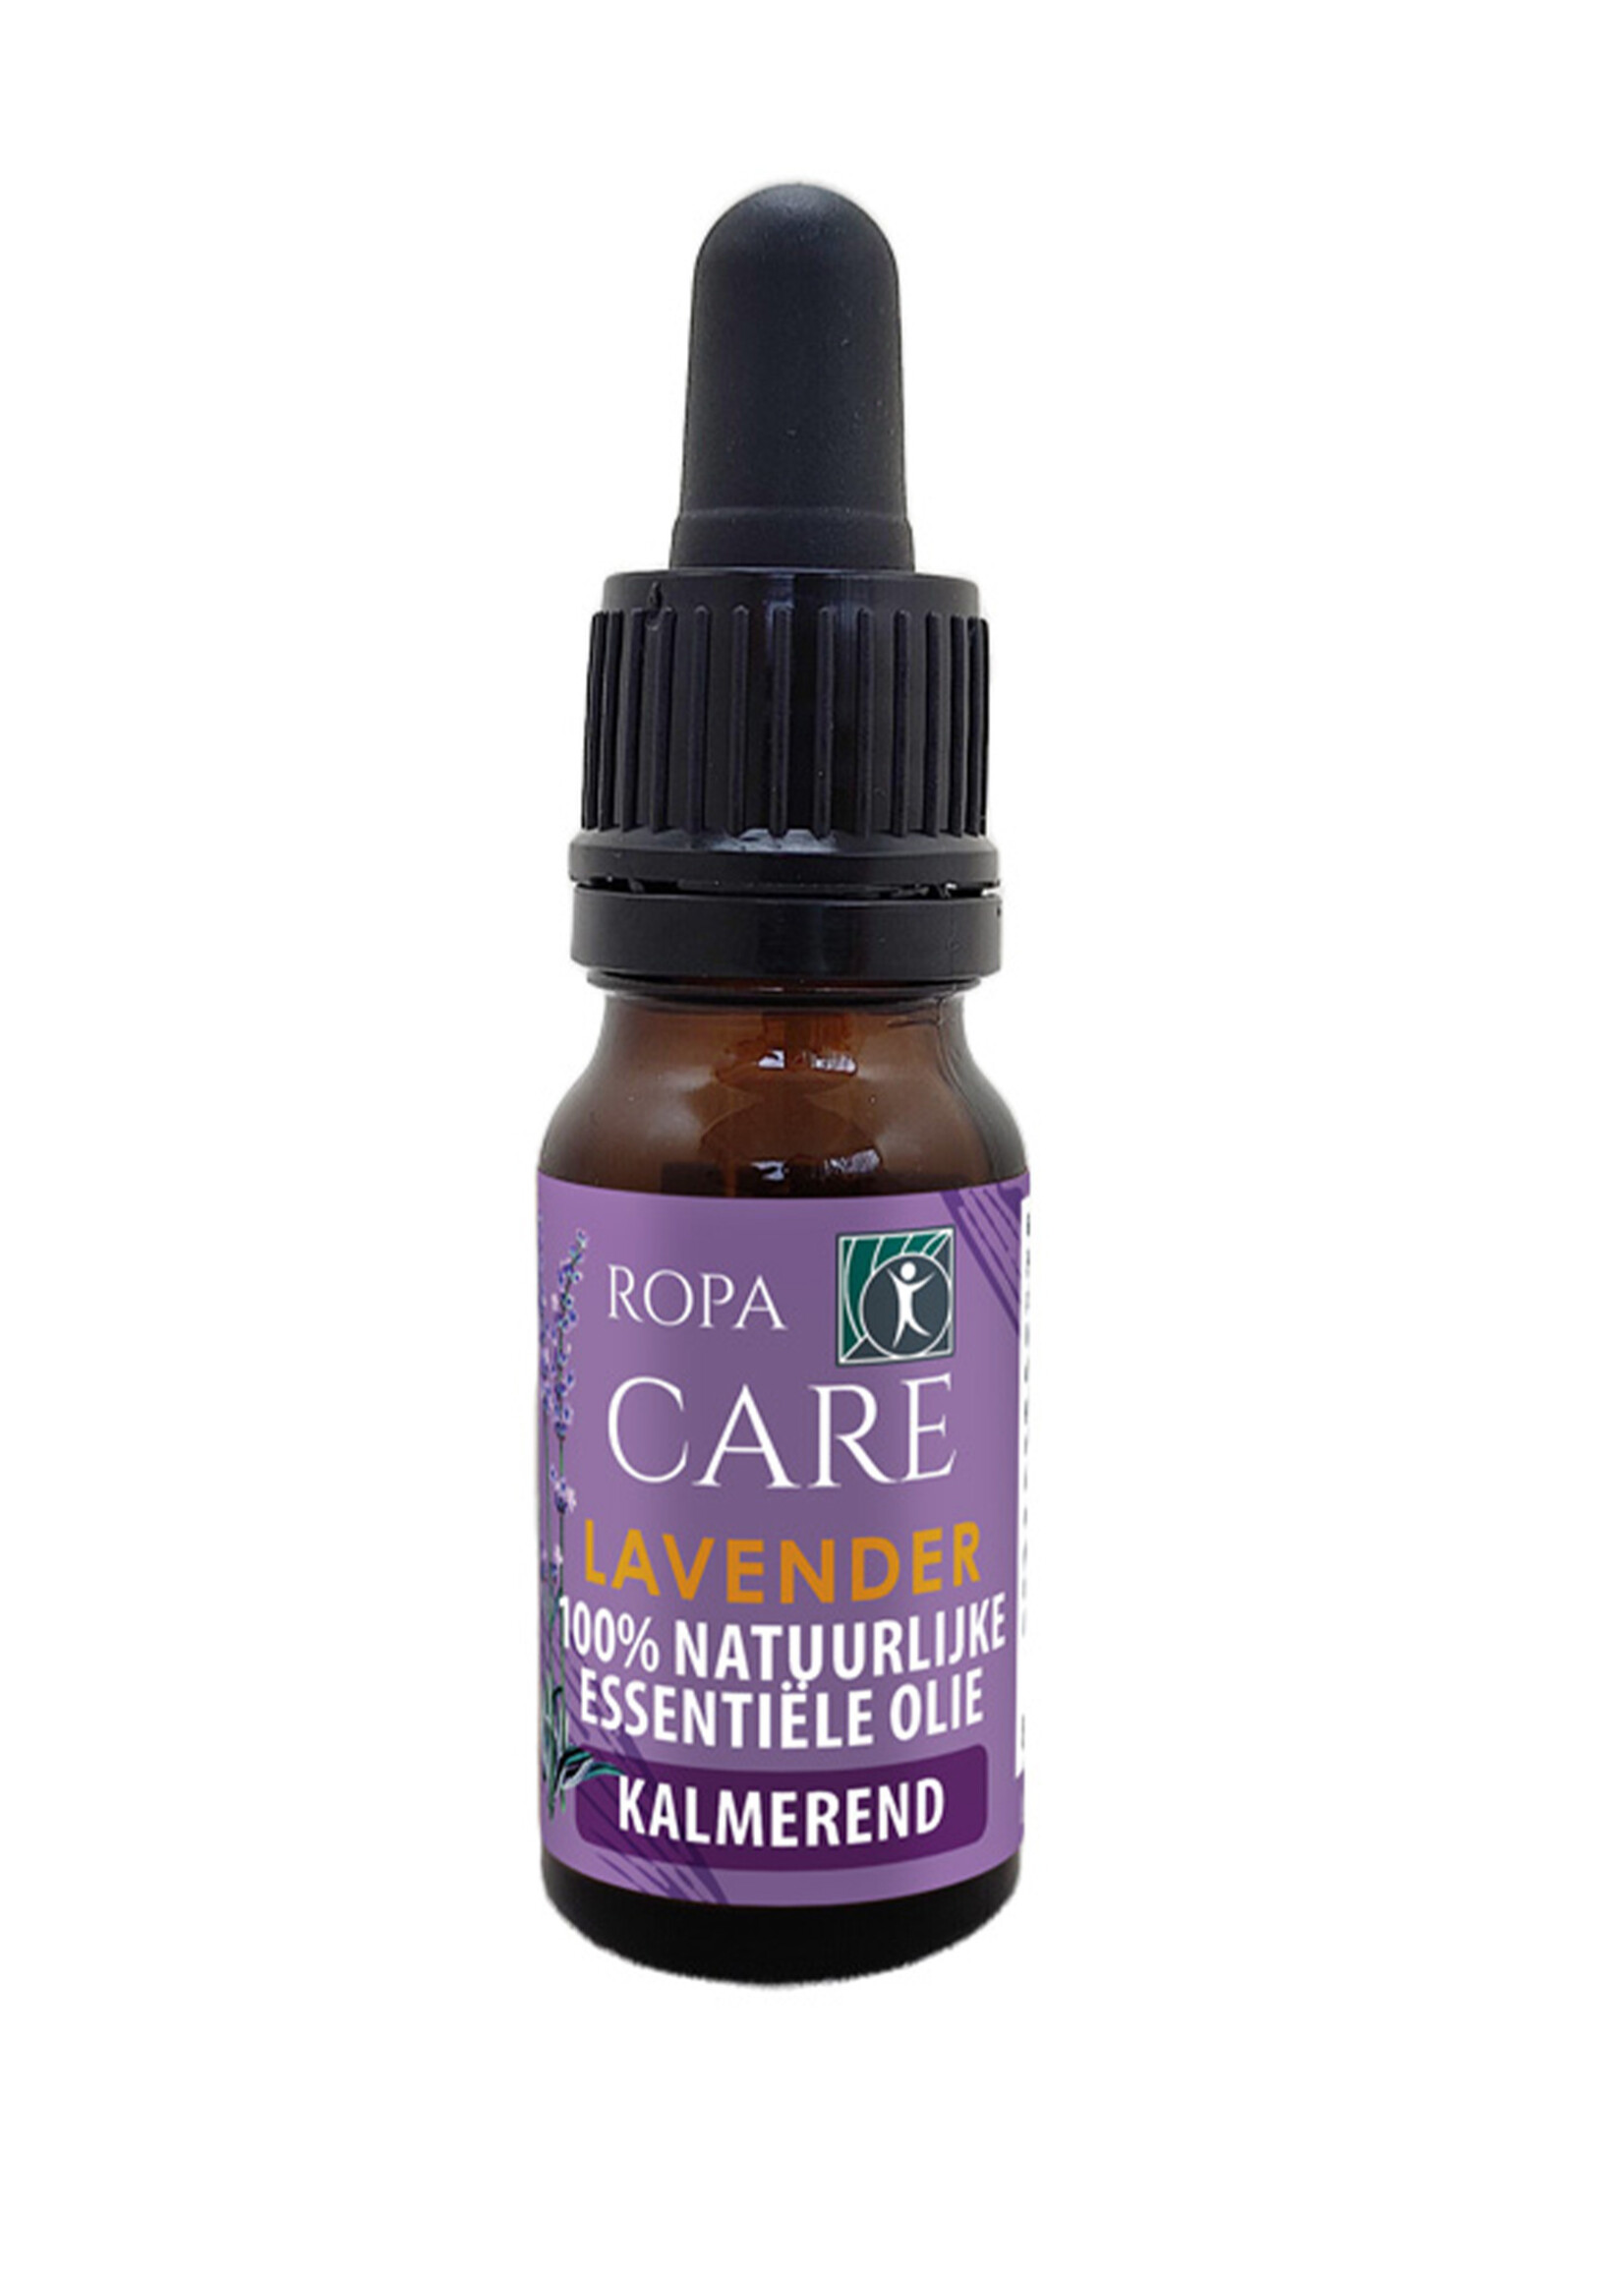 RopaCare Lavender essential oil - 10ml